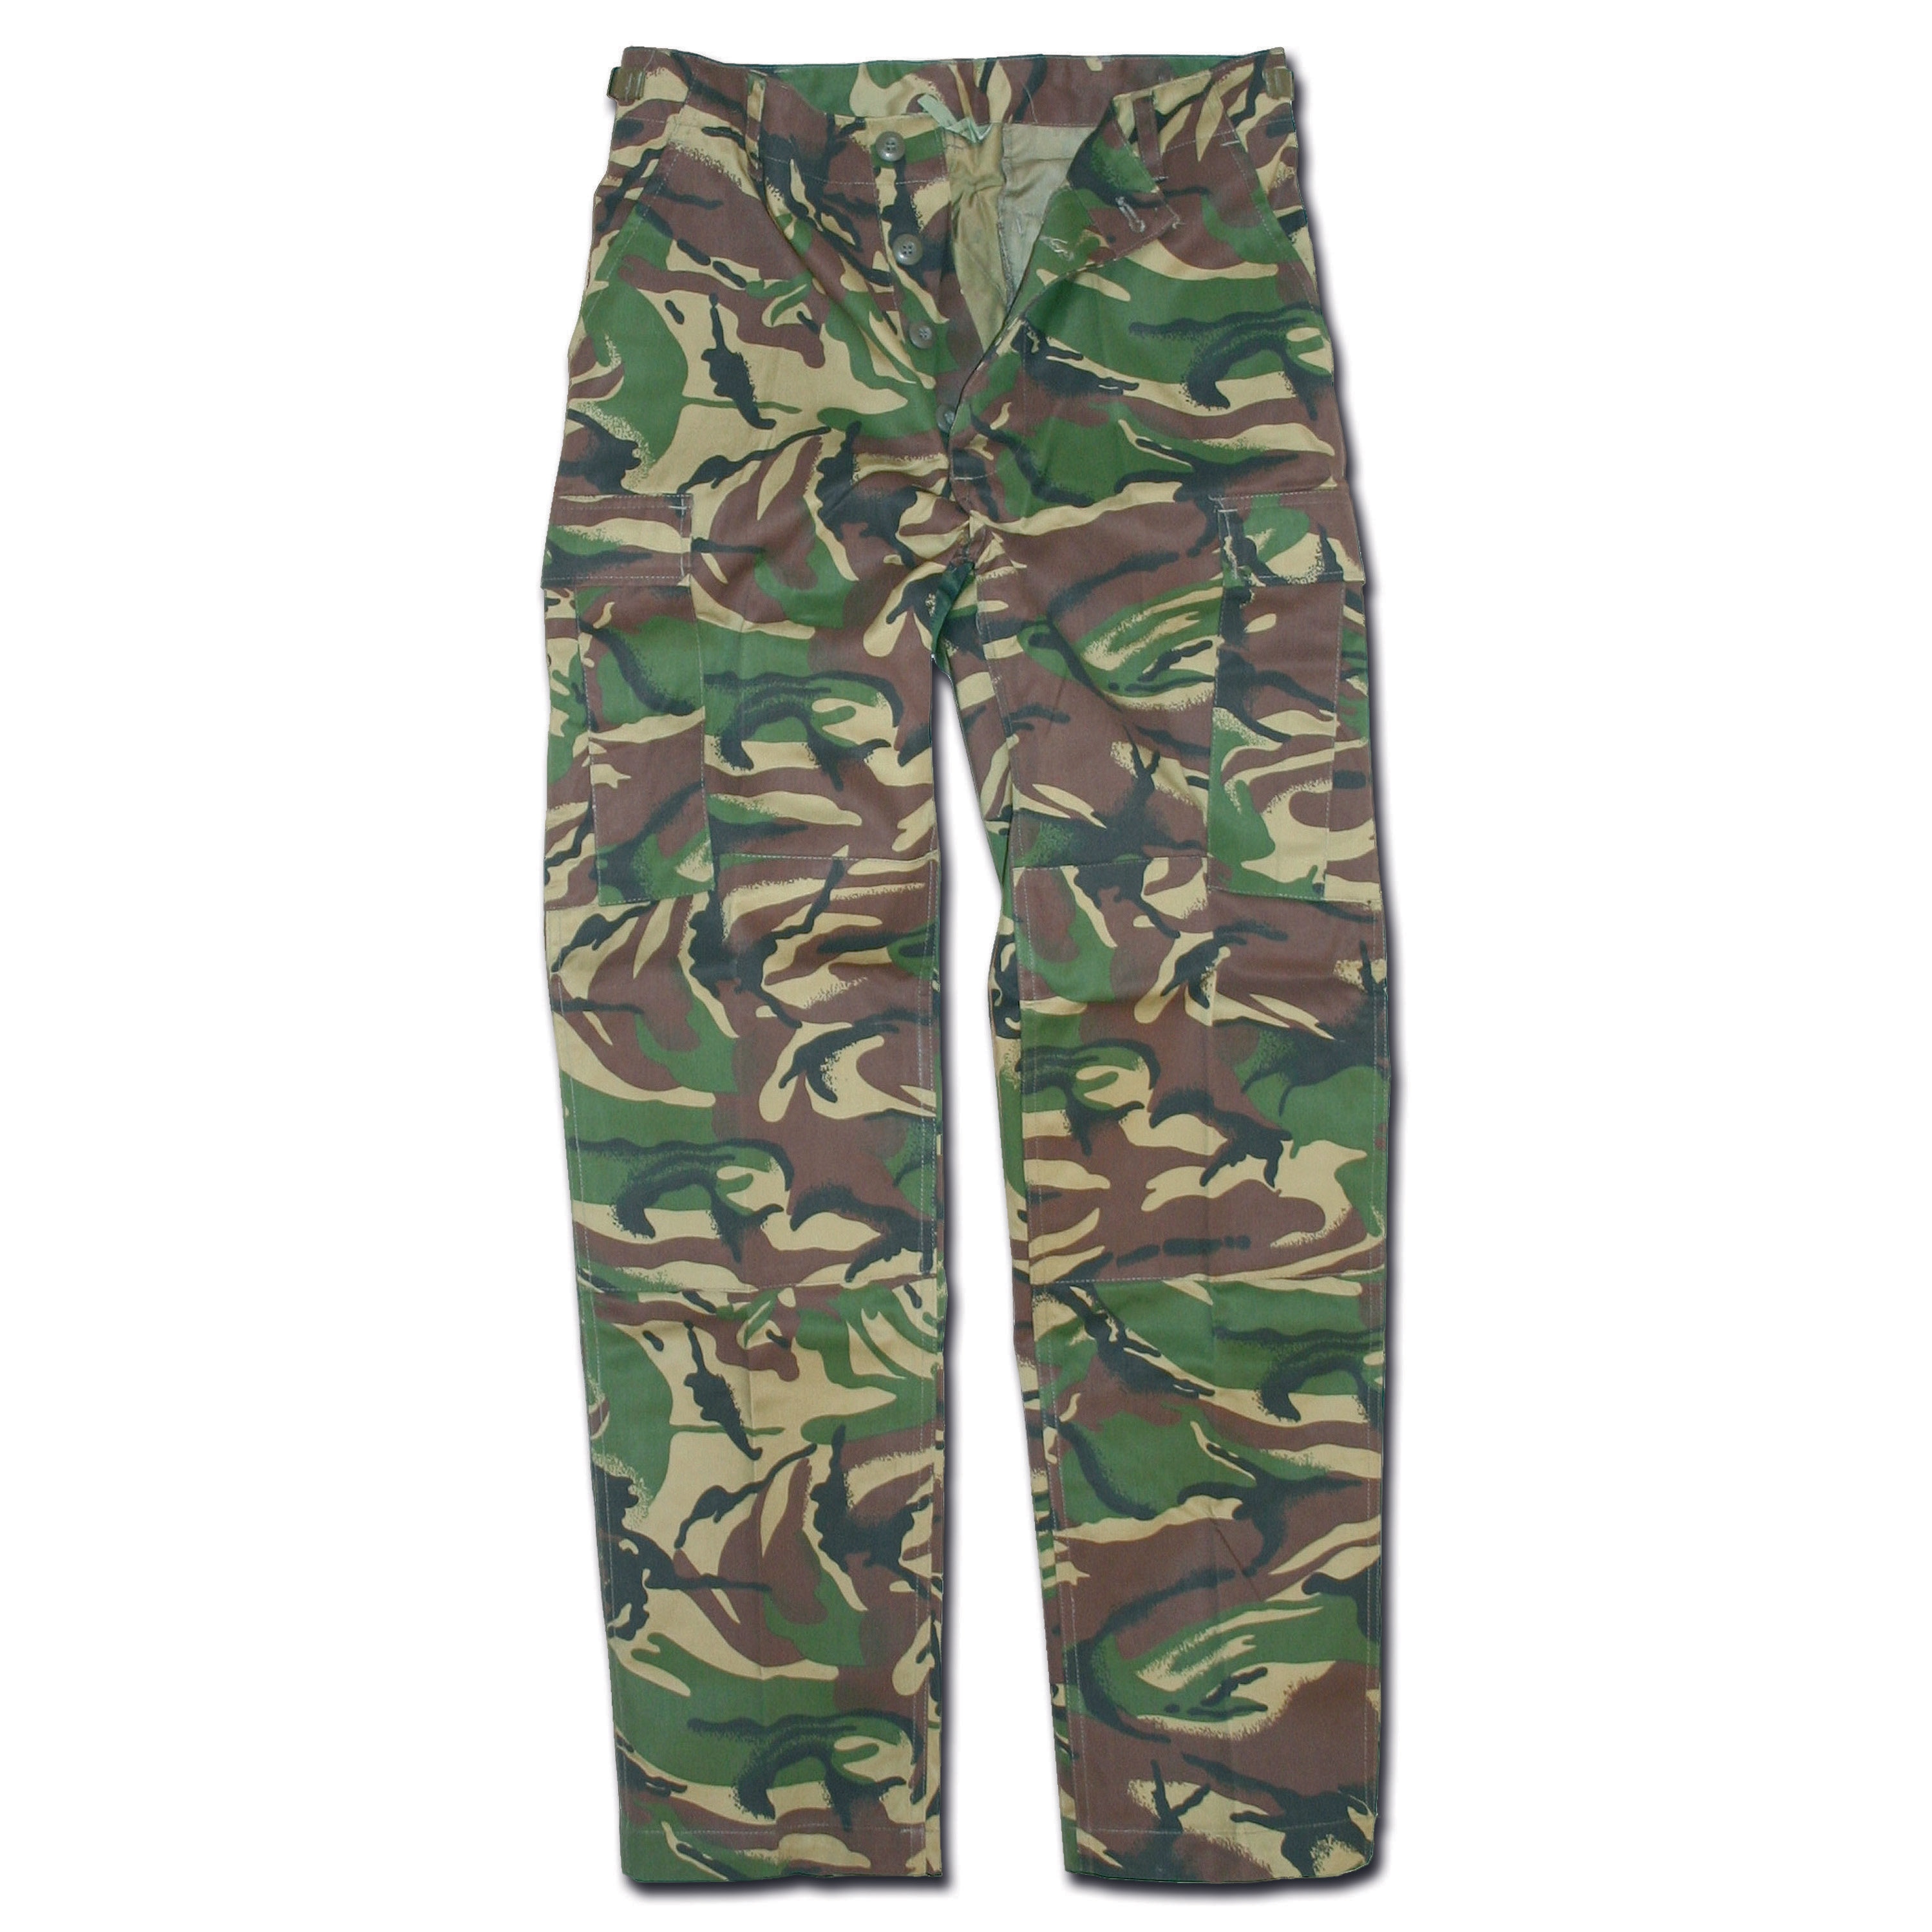 BDU Style Pants DPM camo | BDU Style Pants DPM camo | Field Pants ...